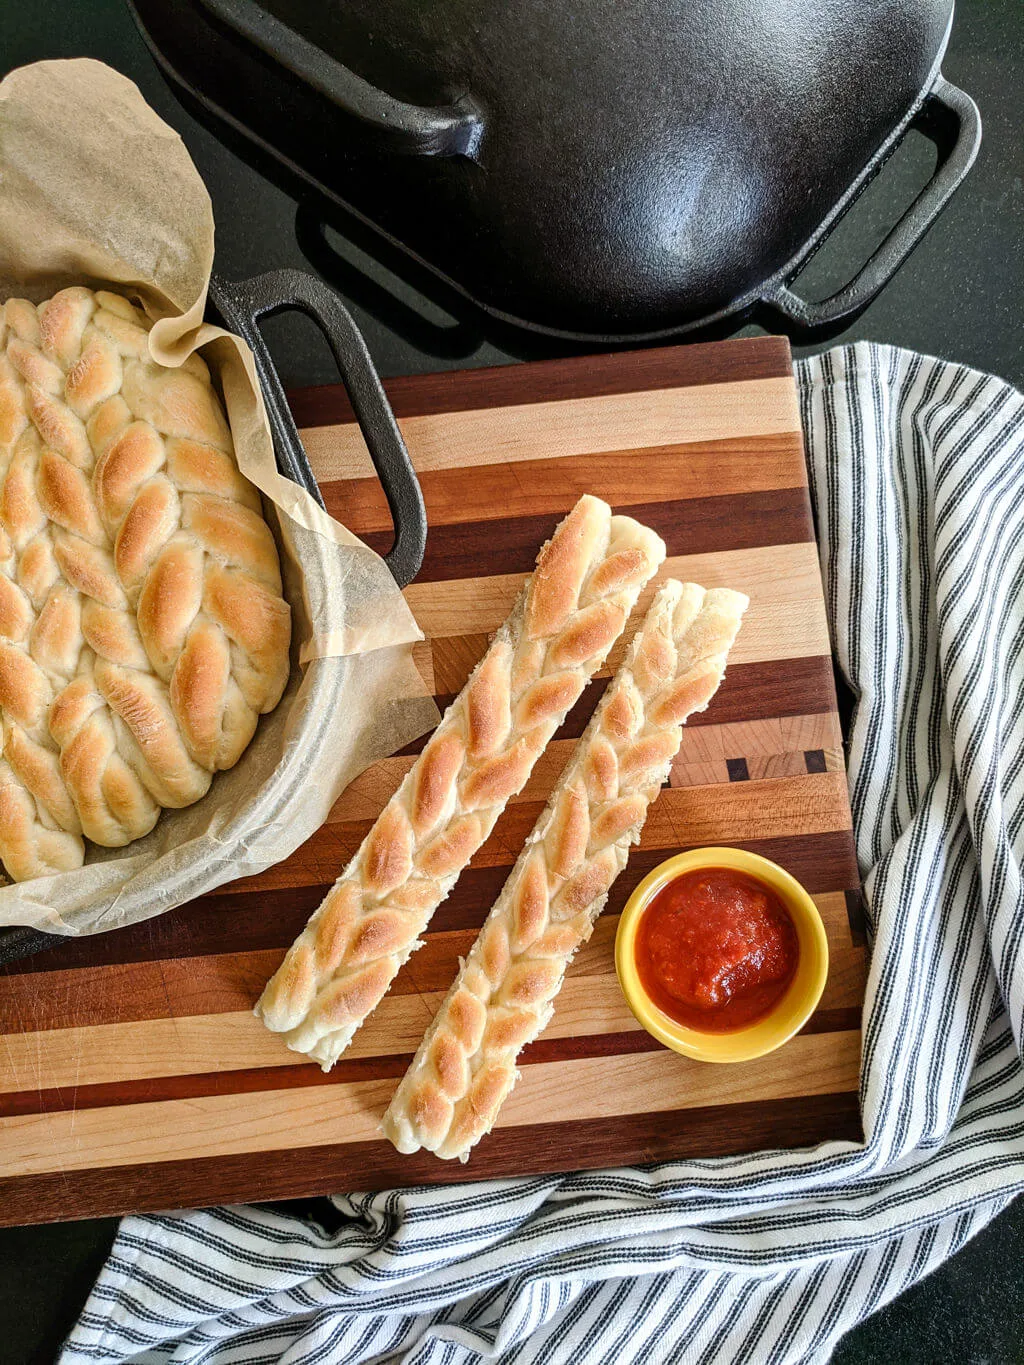 https://www.merrimentdesign.com/images/easy-homemade-breadsticks-recipe.jpg.webp